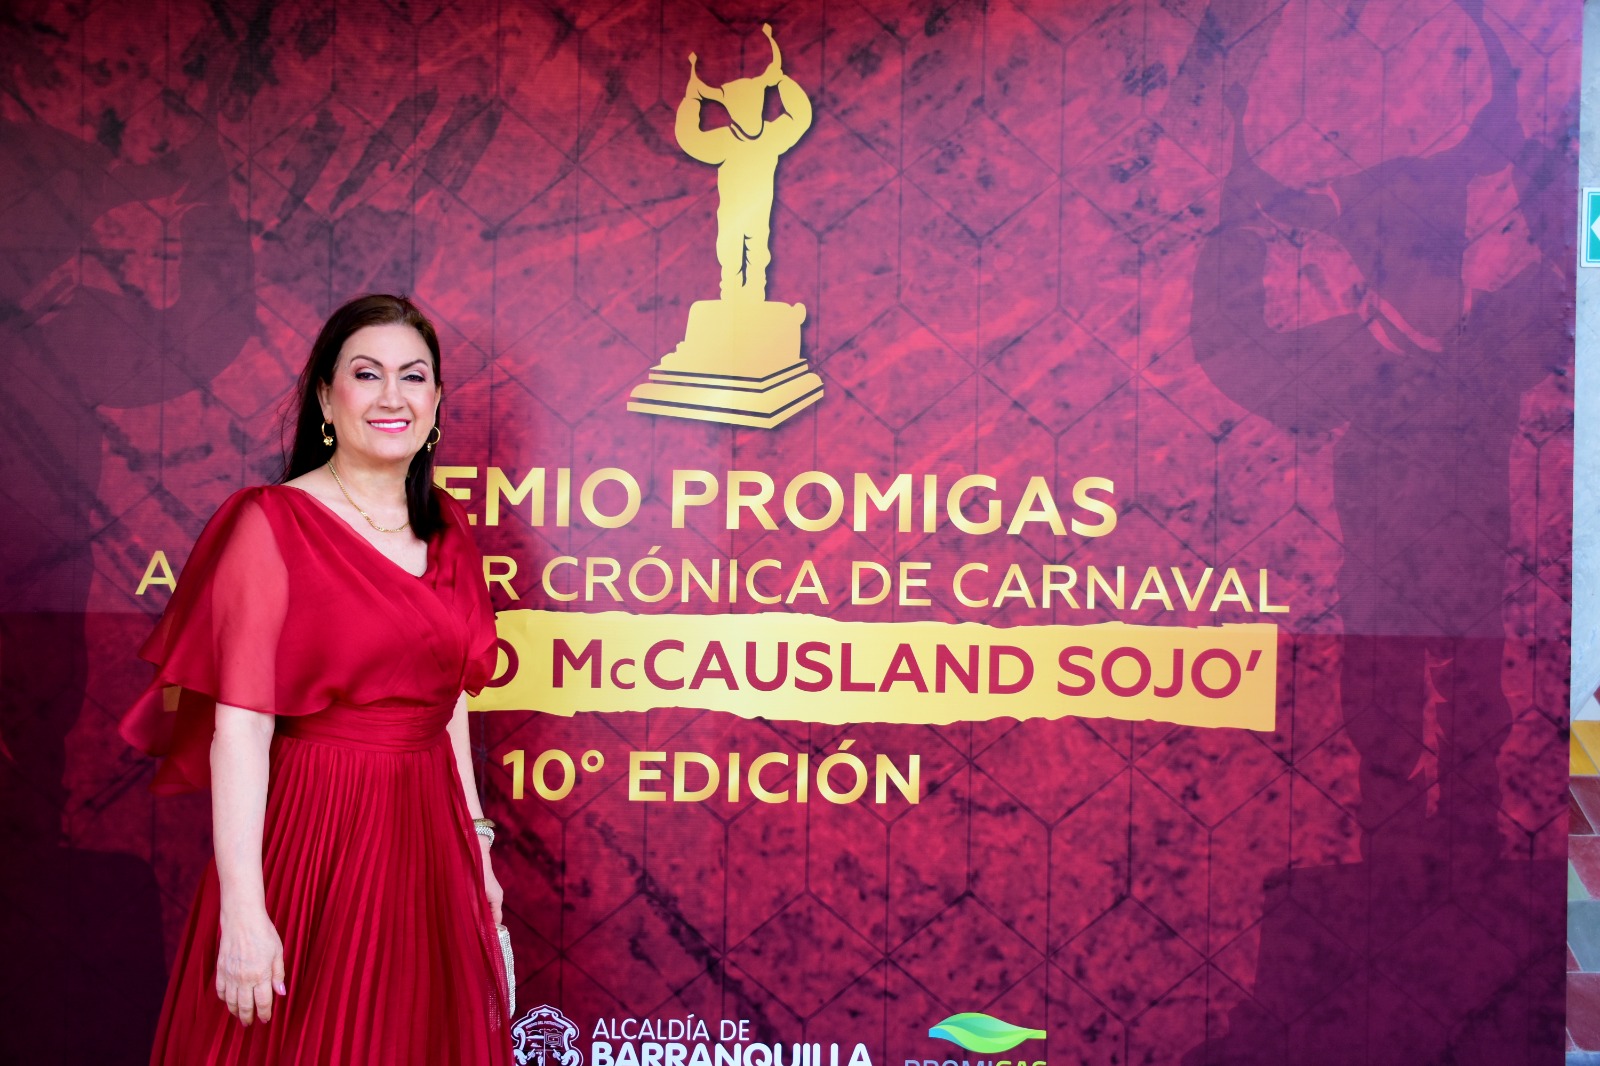 Loor Naissir, directora de la revista, recibió una exaltación especial durante la entrega de los Premios de Periodismo del Carnaval de Barranquilla Ernesto McCausland Sojo. 